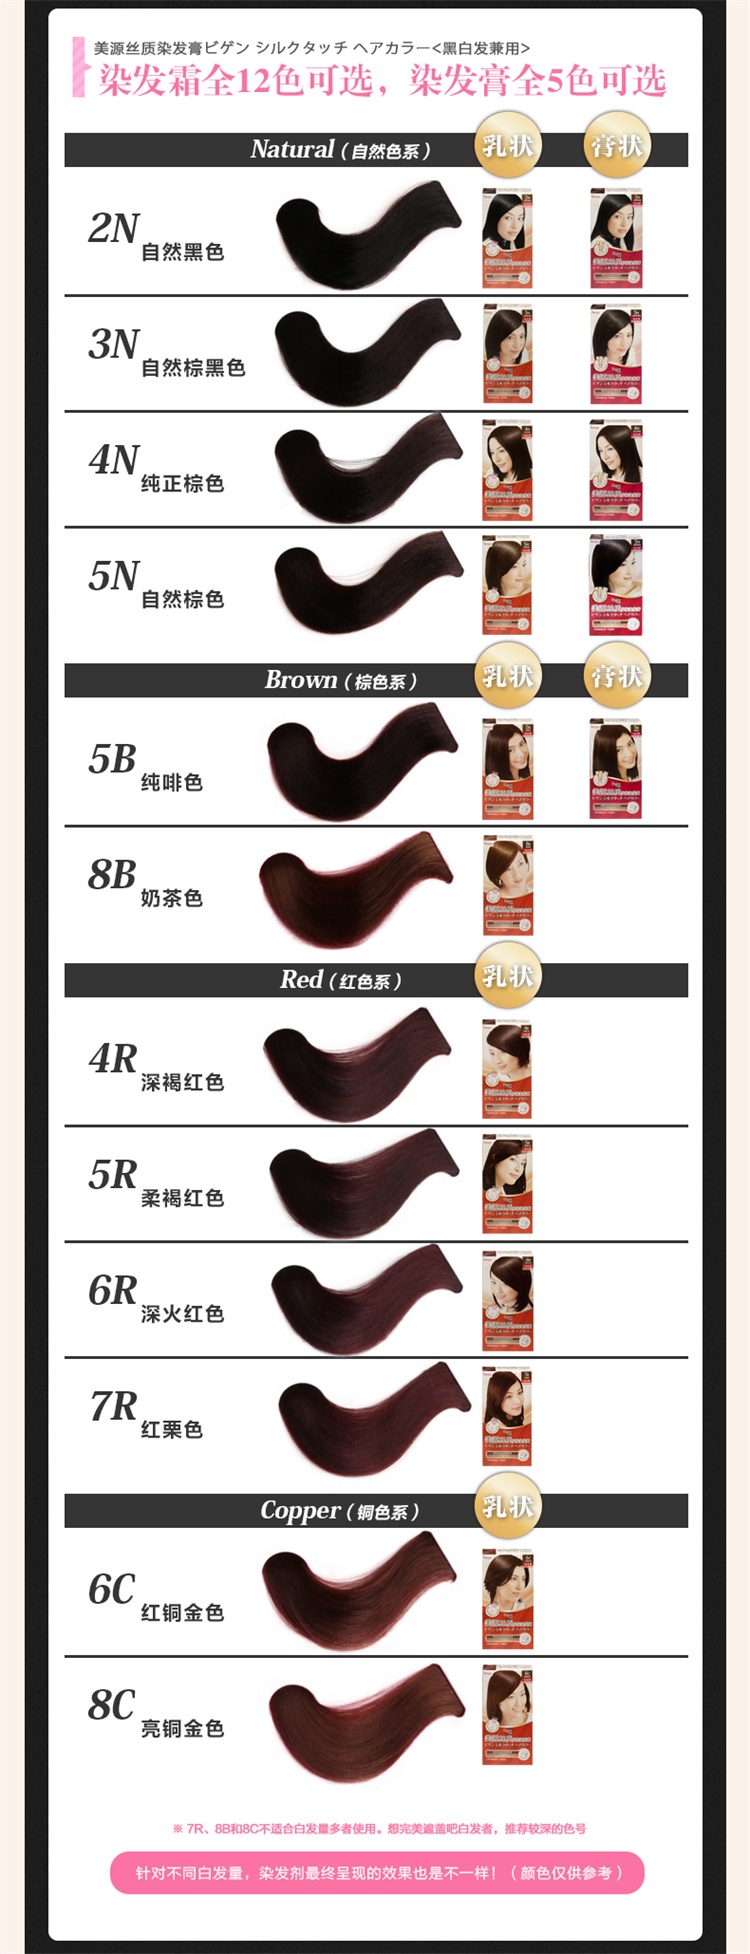 【国内贸易】日本美源丝质护发染发膏自然棕色5N(40g+40g)遮白发染发剂(图8)